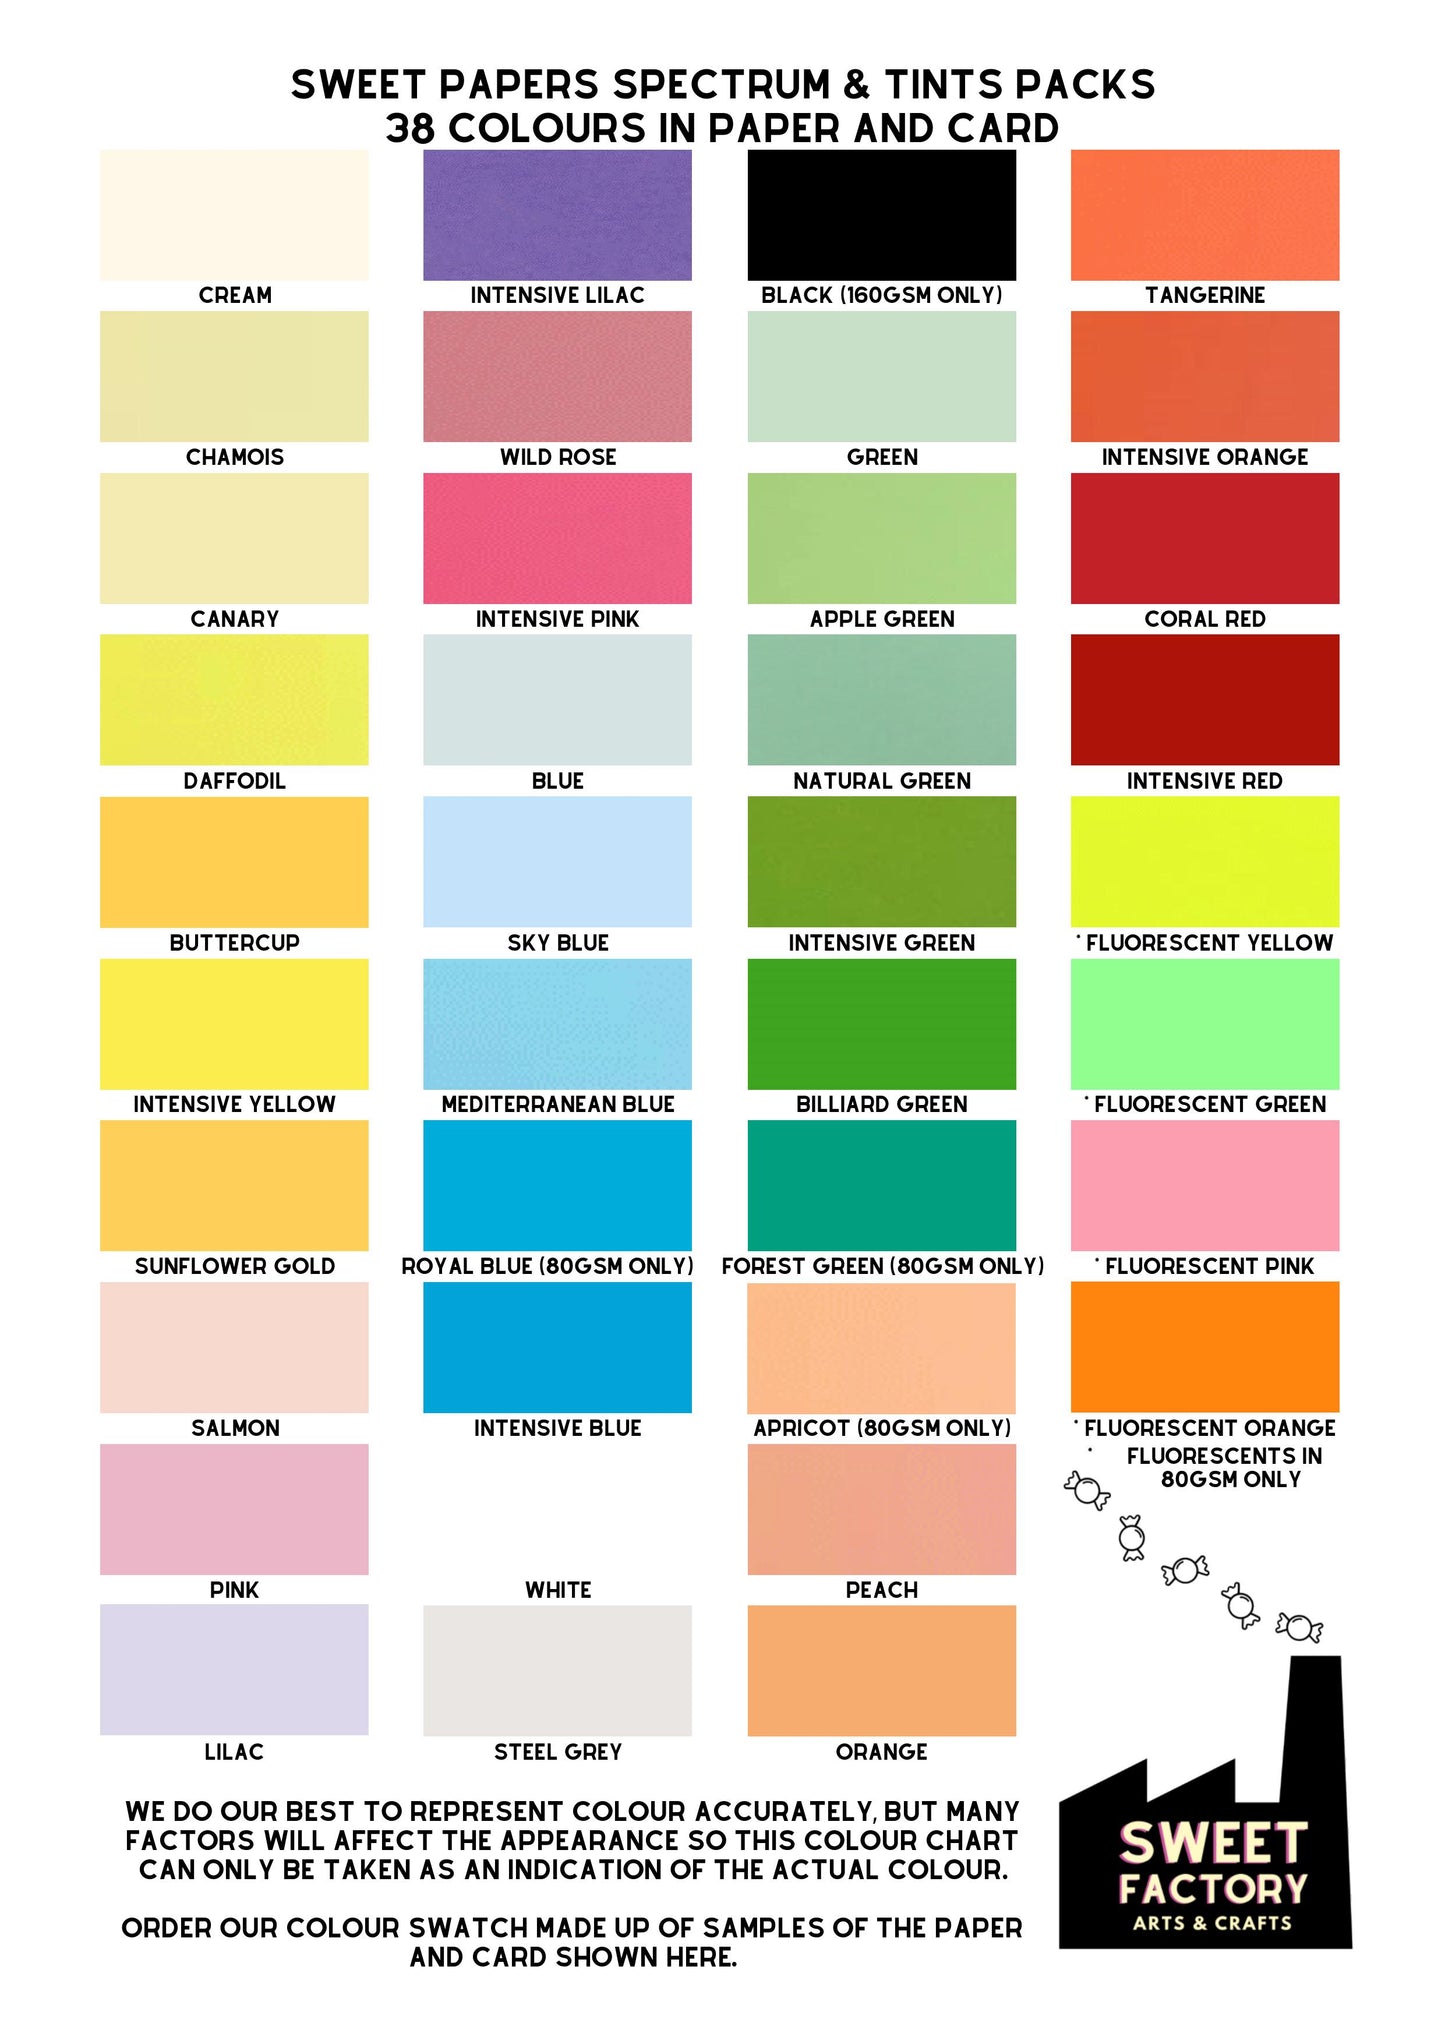 A4 Coloured Card • 25 Sheet Packs